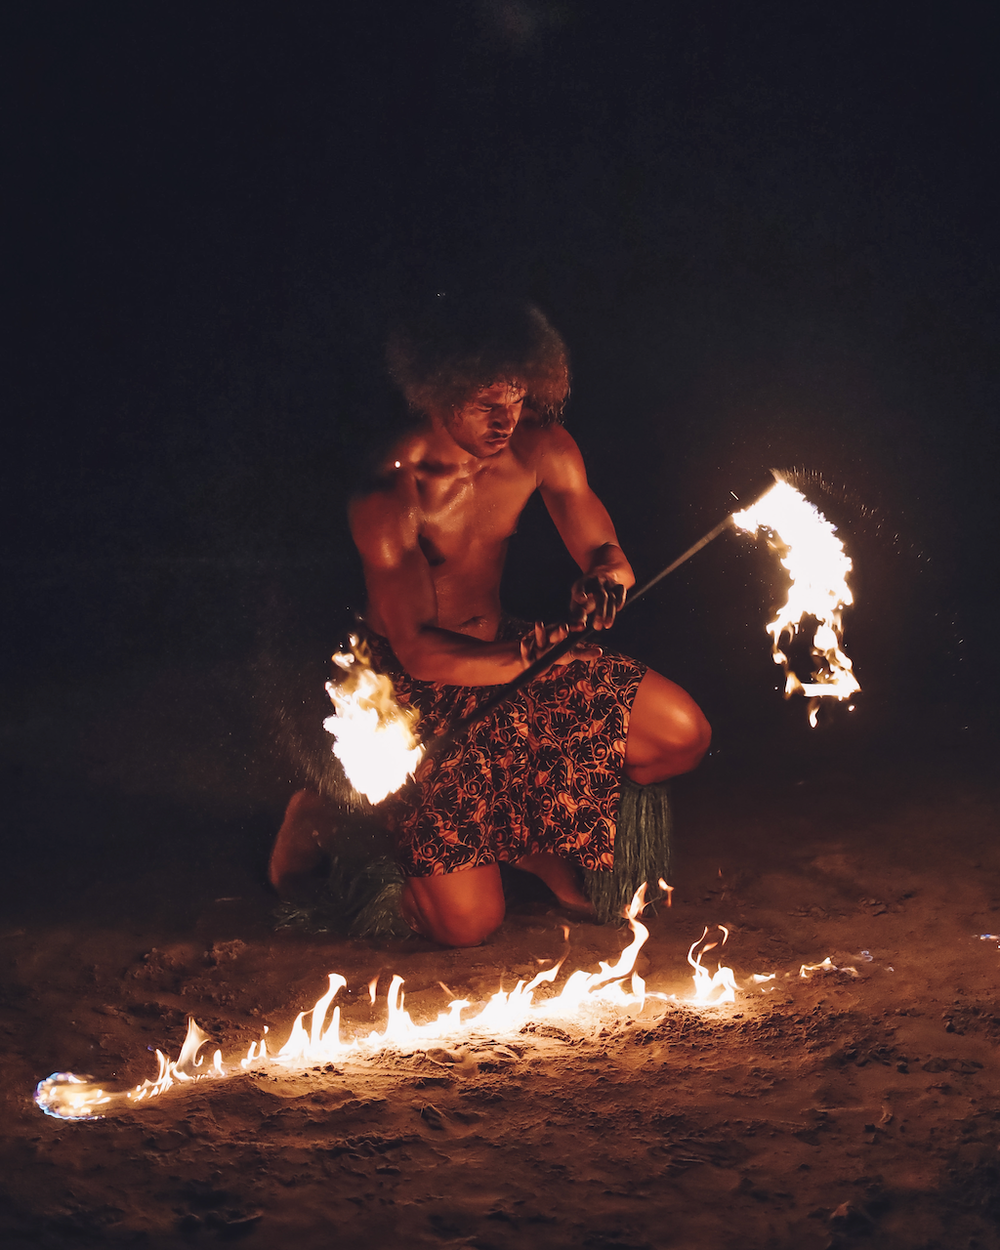 Fire show by the beach in Smugglers Cove - Nadi - Viti Levu Island - Fiji